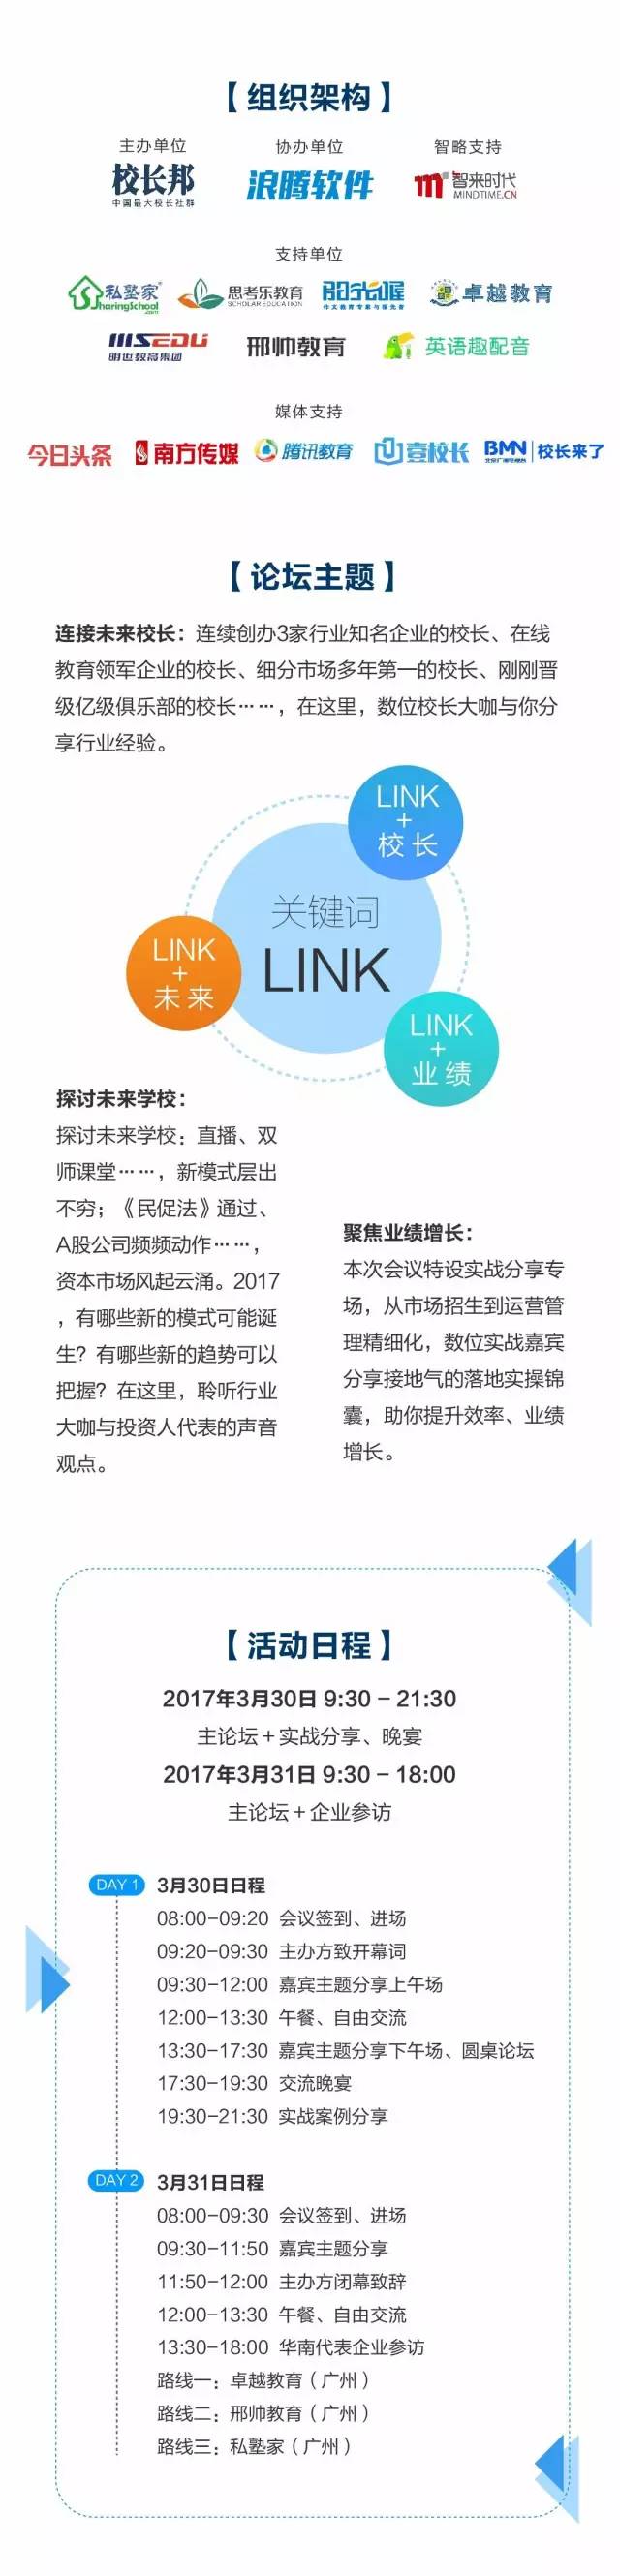 2017首届华南教育培训LINK校长高峰论坛暨校长邦沙龙广州站 